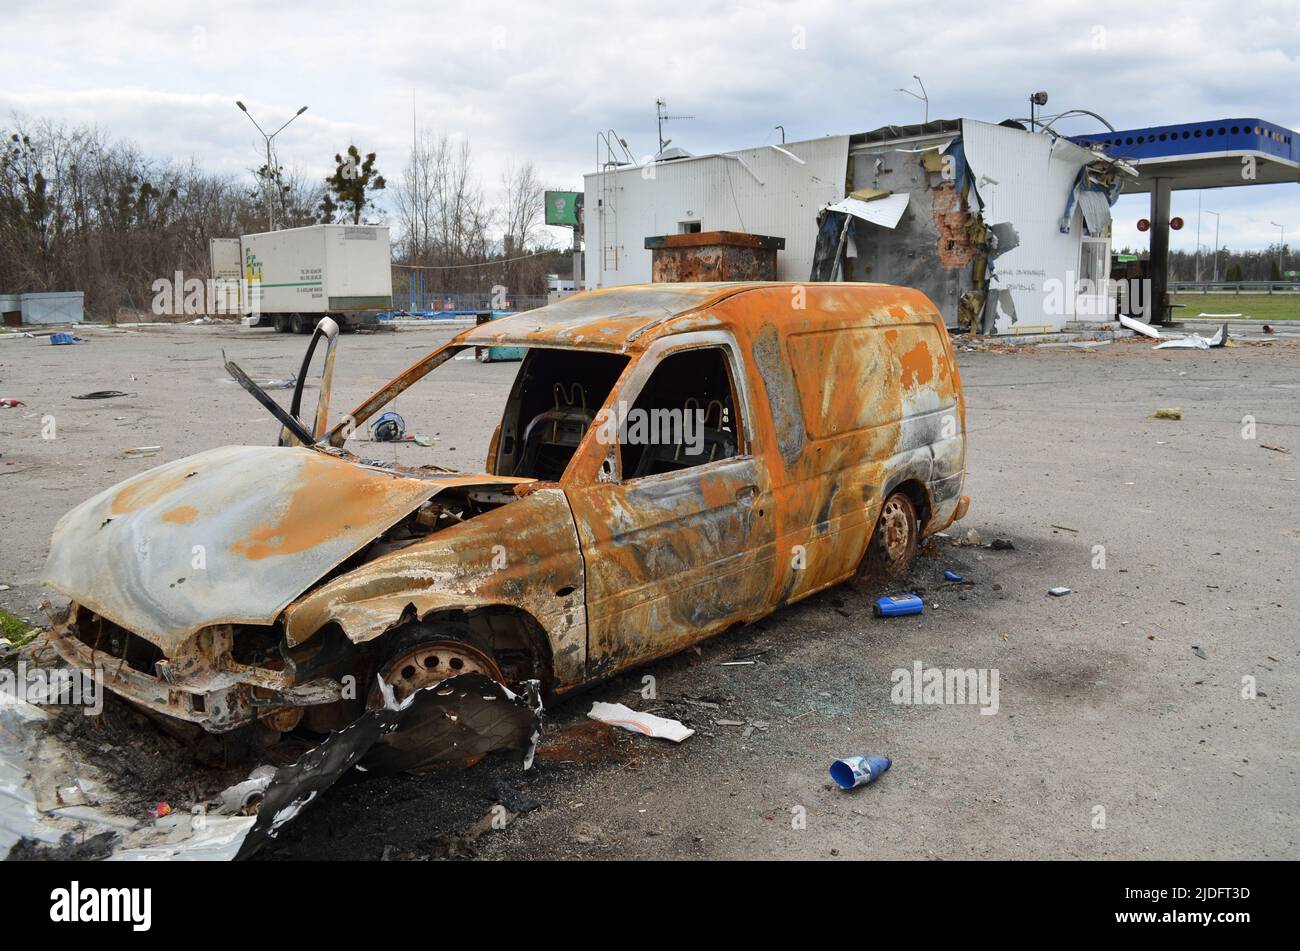 Mriya, regione di Kyiv, Ucraina - Apr 11, 2022: Auto civile bruciata e rotta nella regione di Kiev durante l'invasione russa dell'Ucraina. Foto Stock